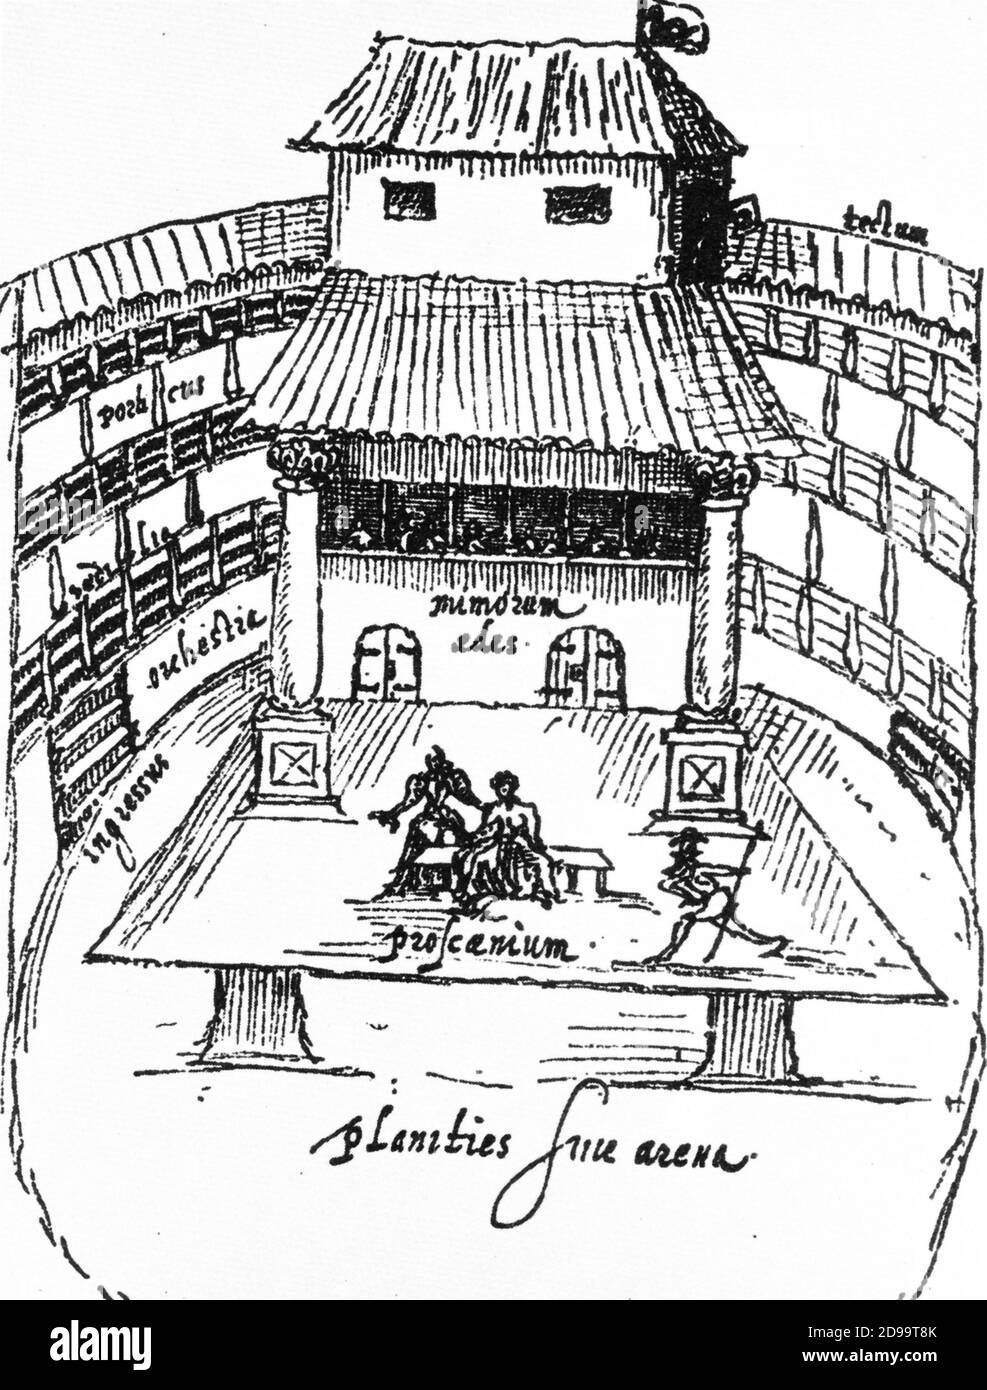 The Swan Theatre , construit par Francis Langley , où le poète et écrivain WILLIAM SHAKESPEARE ( Stratford-on-Avon 1564 - 1616 ) Et sa compagnie joua en 1596 - 1597 - TEATRO - THEATRE - COMMEDIOGRAFO - SCRITTORE - LETTERATO - LETTERATURA - littérature - poeta - poesia - poésie - elisabettiano - attore - acteur - scena - scène - palcoscenico - scène - commedia - comédie - tragèse - tragédie ---- Archivio GBB Banque D'Images